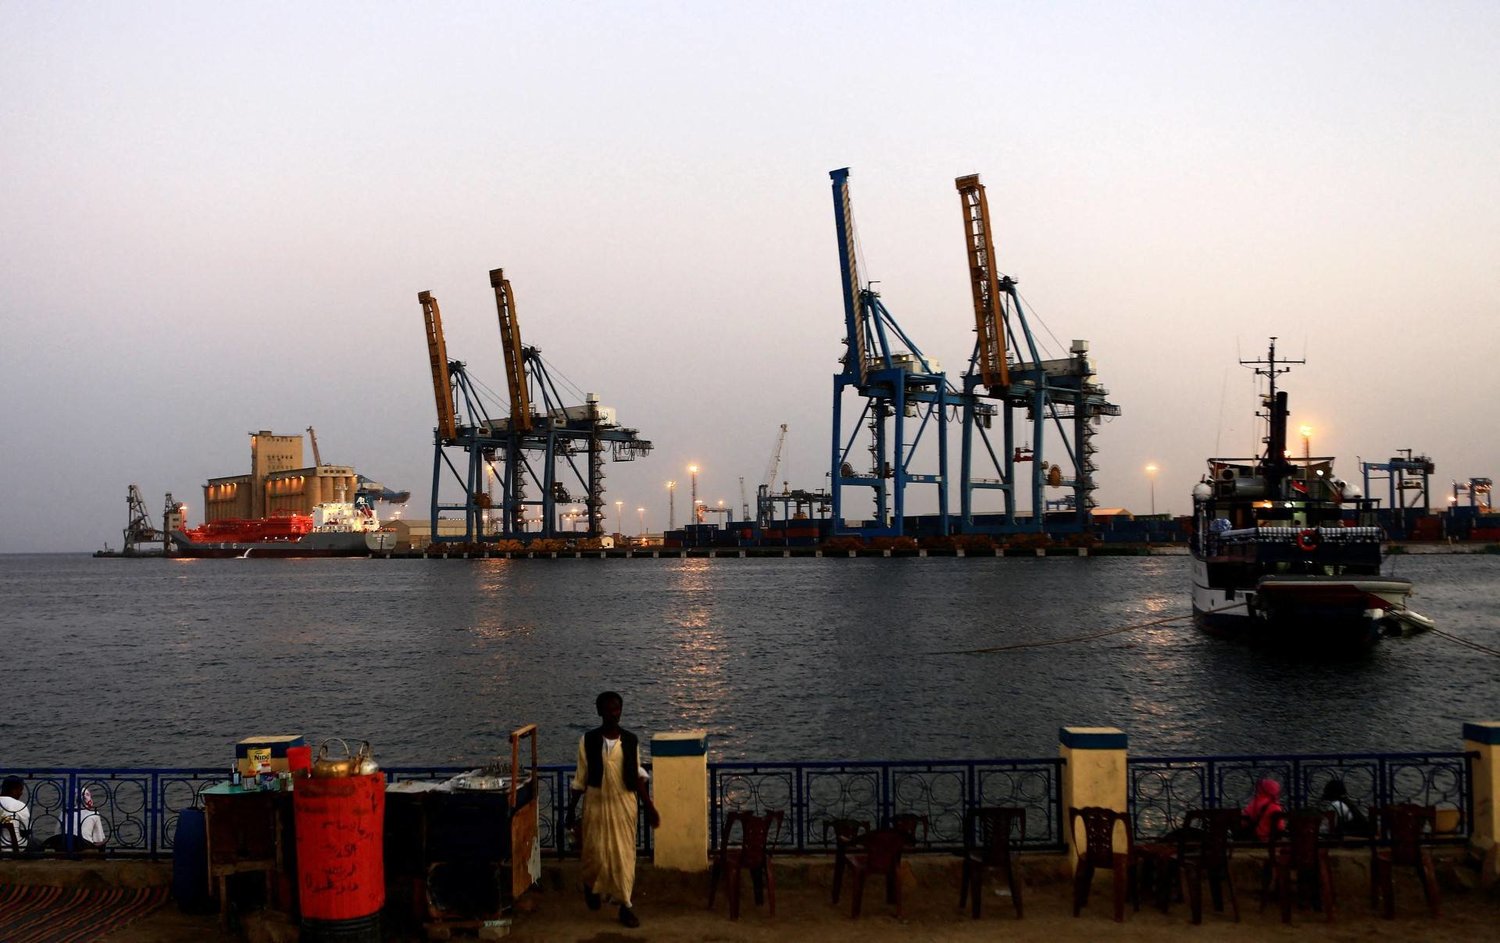 يربط البحر الأحمر بين قارتي أفريقيا وآسيا وهو ممر حيوي للشحن البحري (رويترز)